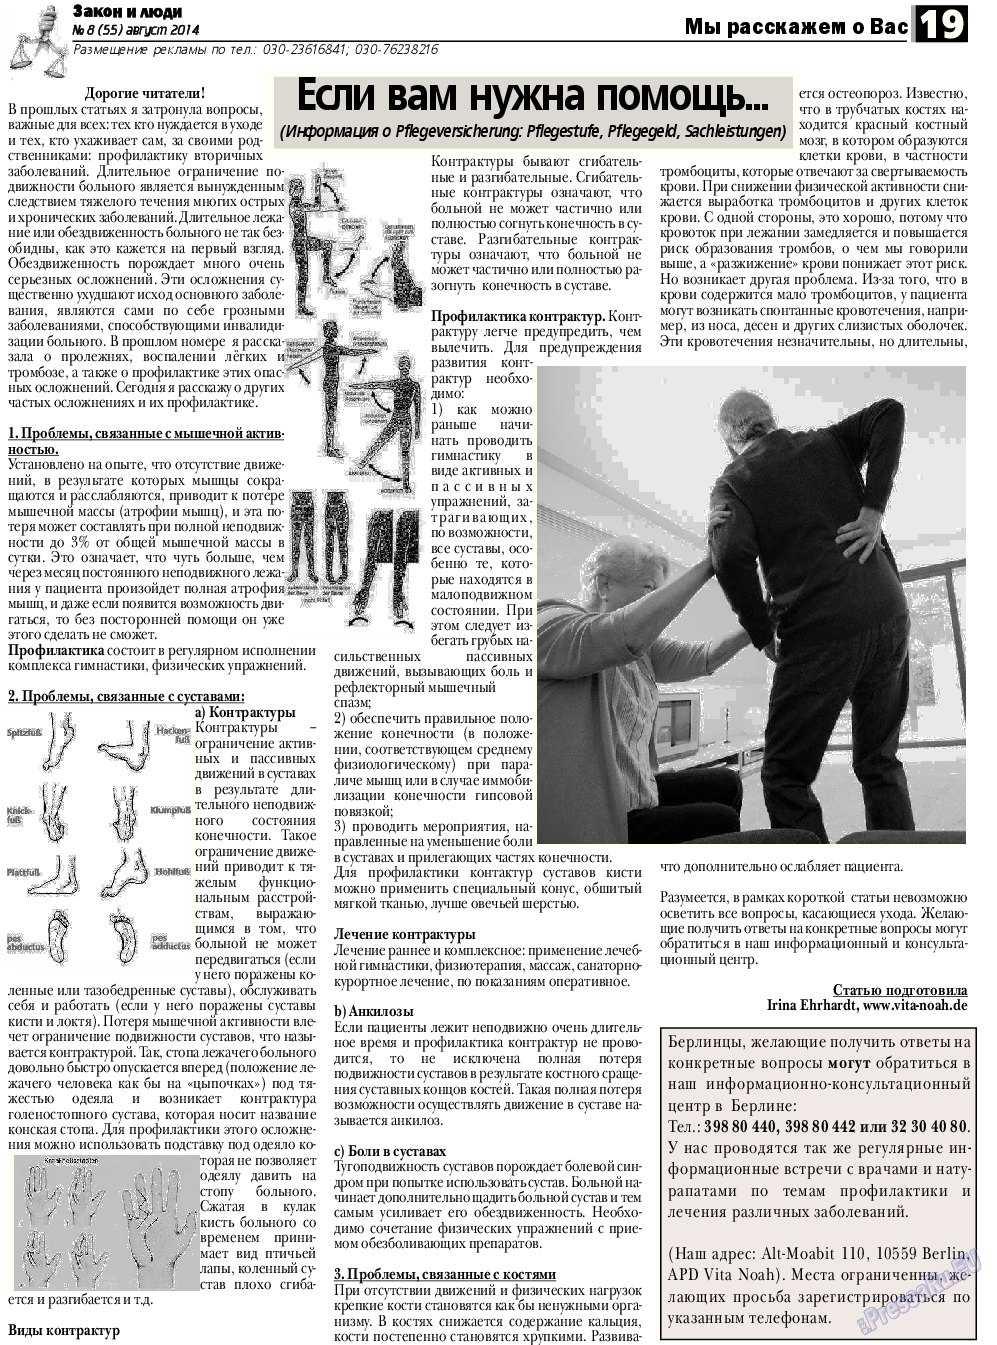 Закон и люди, газета. 2014 №8 стр.19